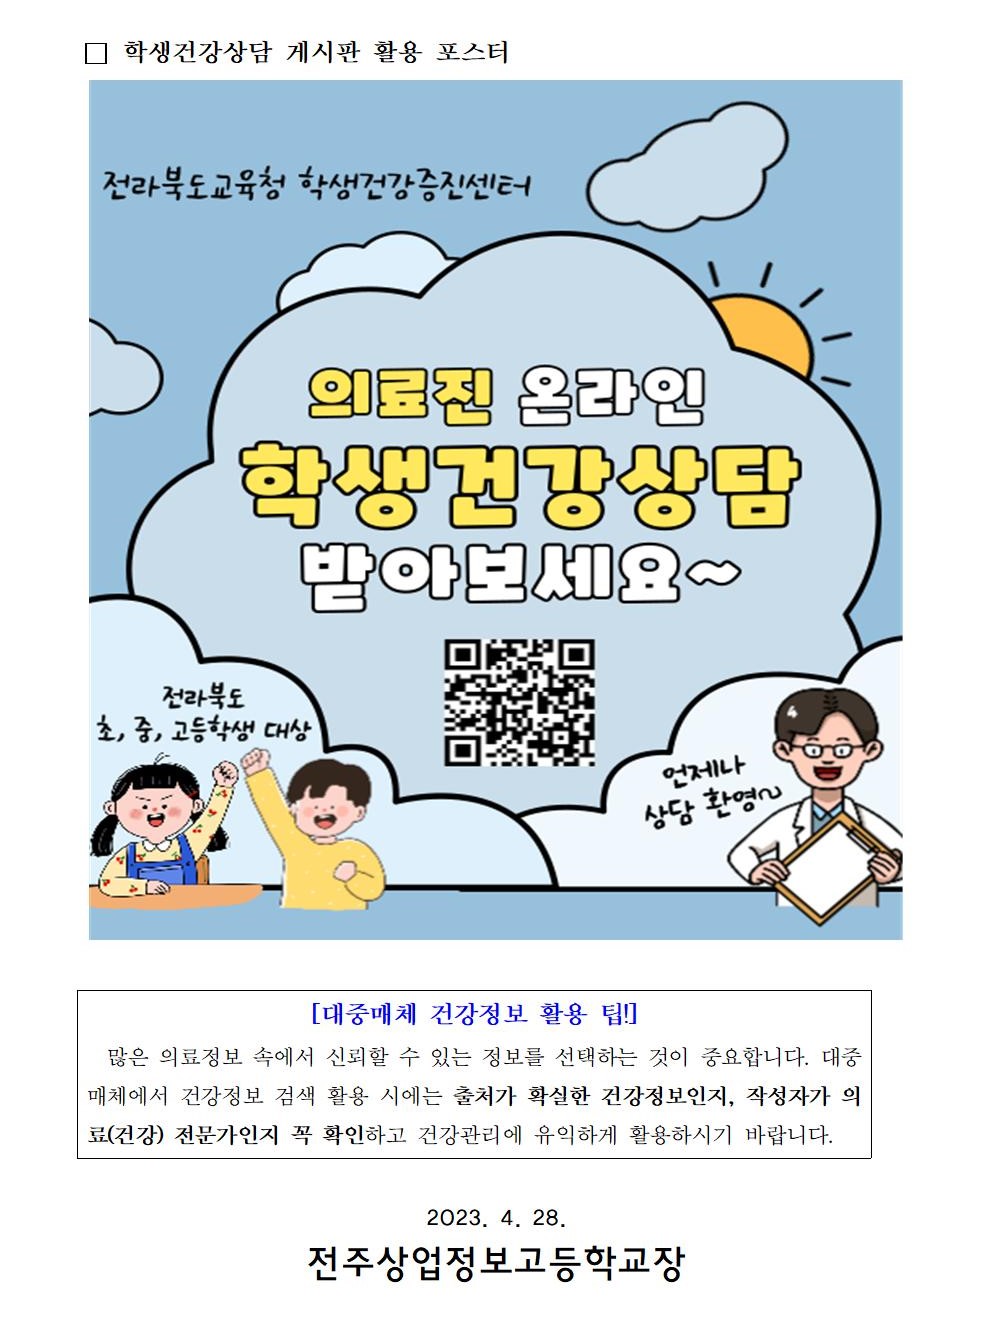 전라북도교육청 학생건강상담 게시판 이용 방법 안내 가정통신문002